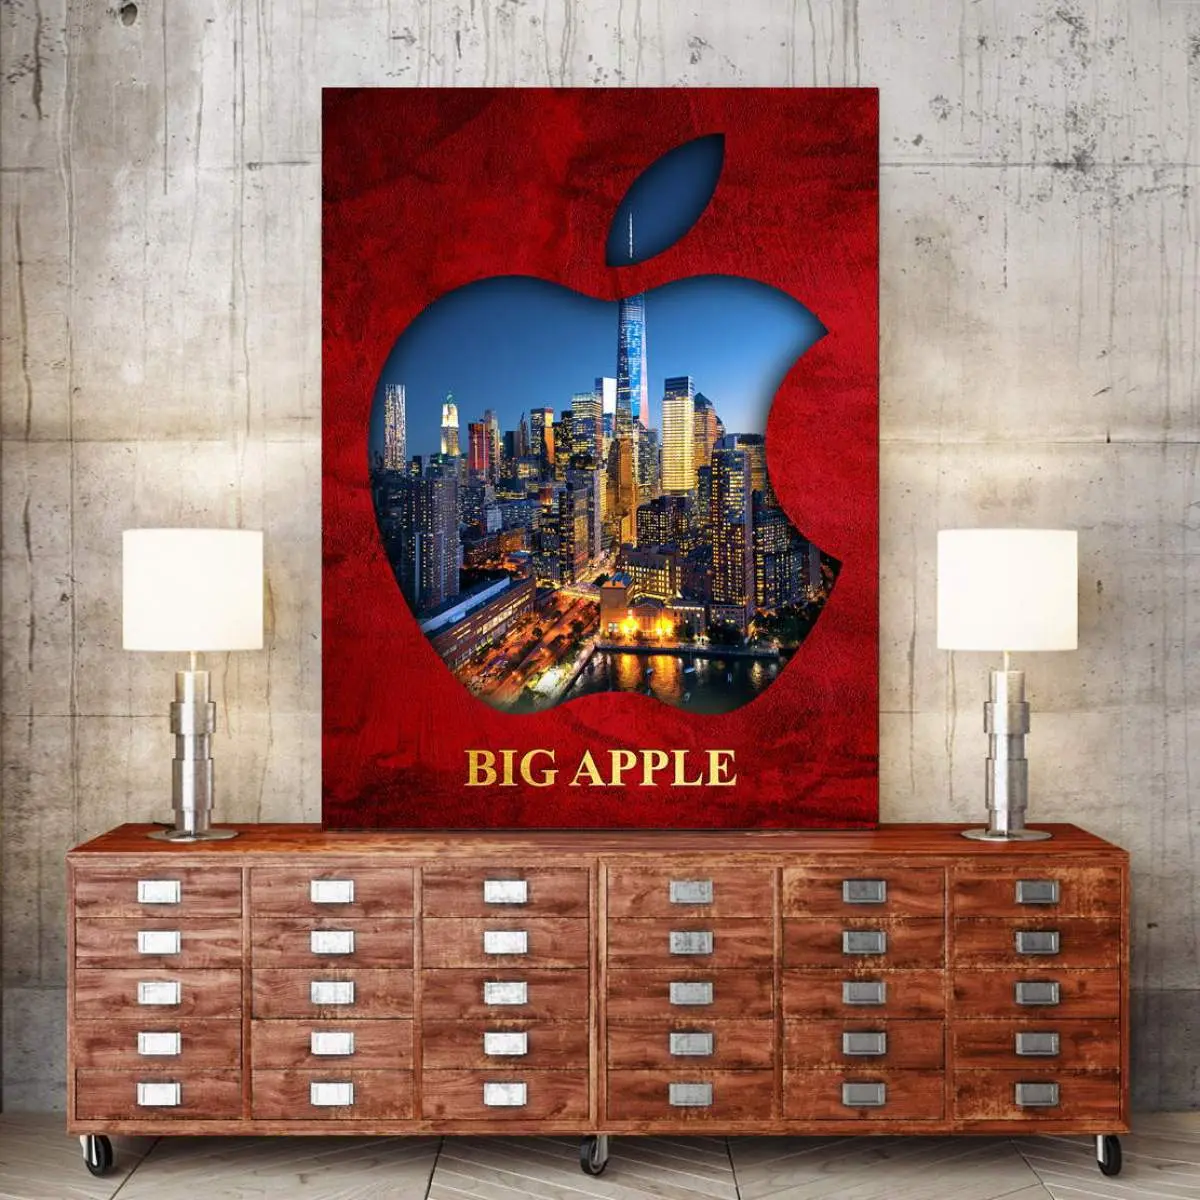 Big Apple von Ron Danell | Kunstgestalten24